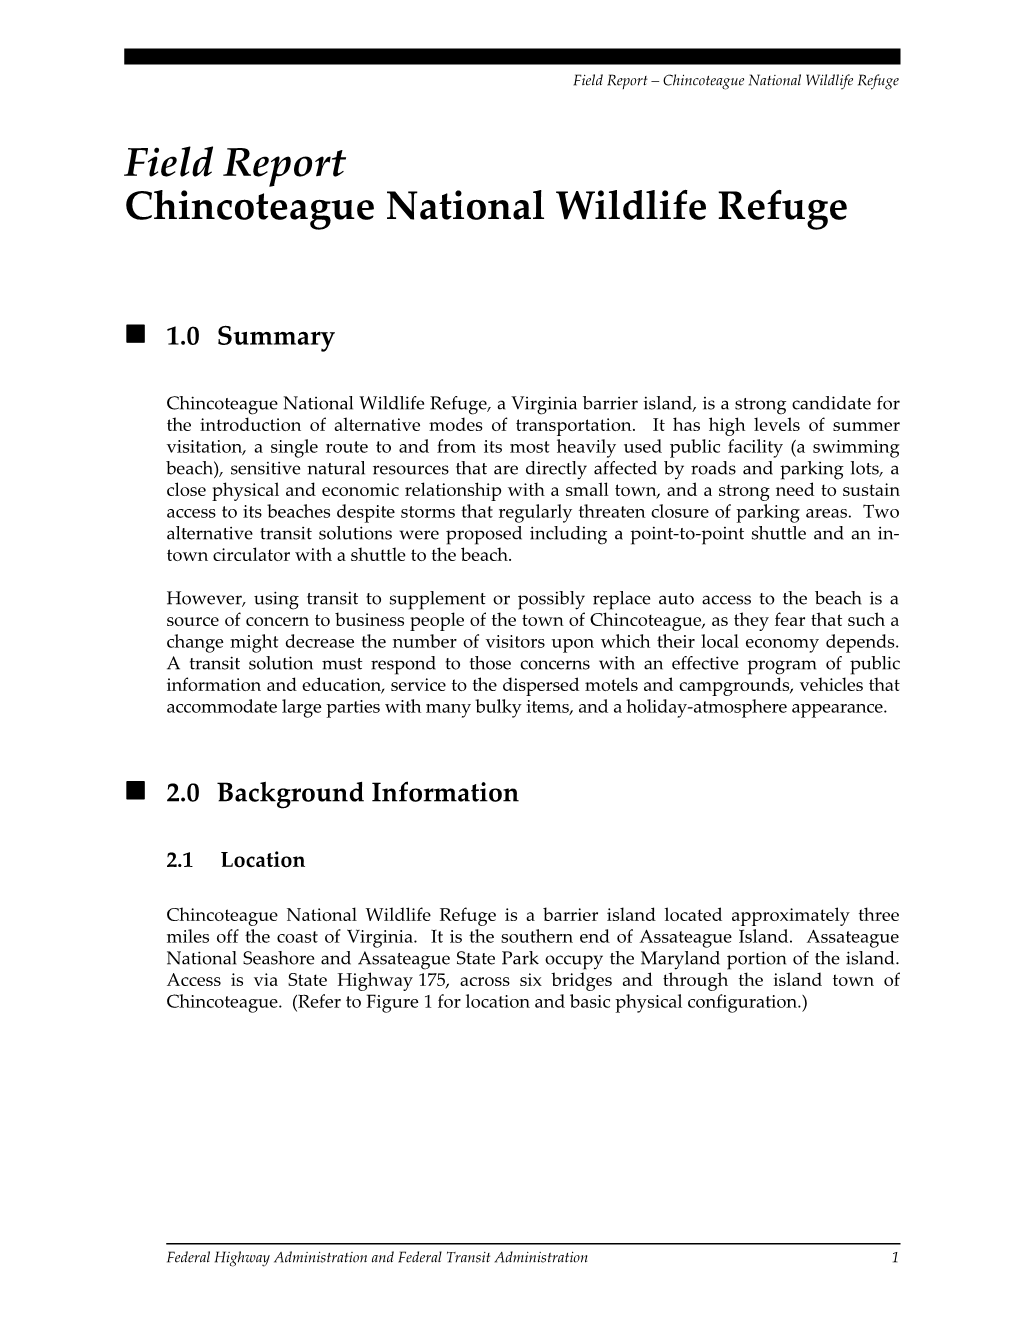 6820.F03 / NPS / Chincoteague Nat. Wildlife Refuge